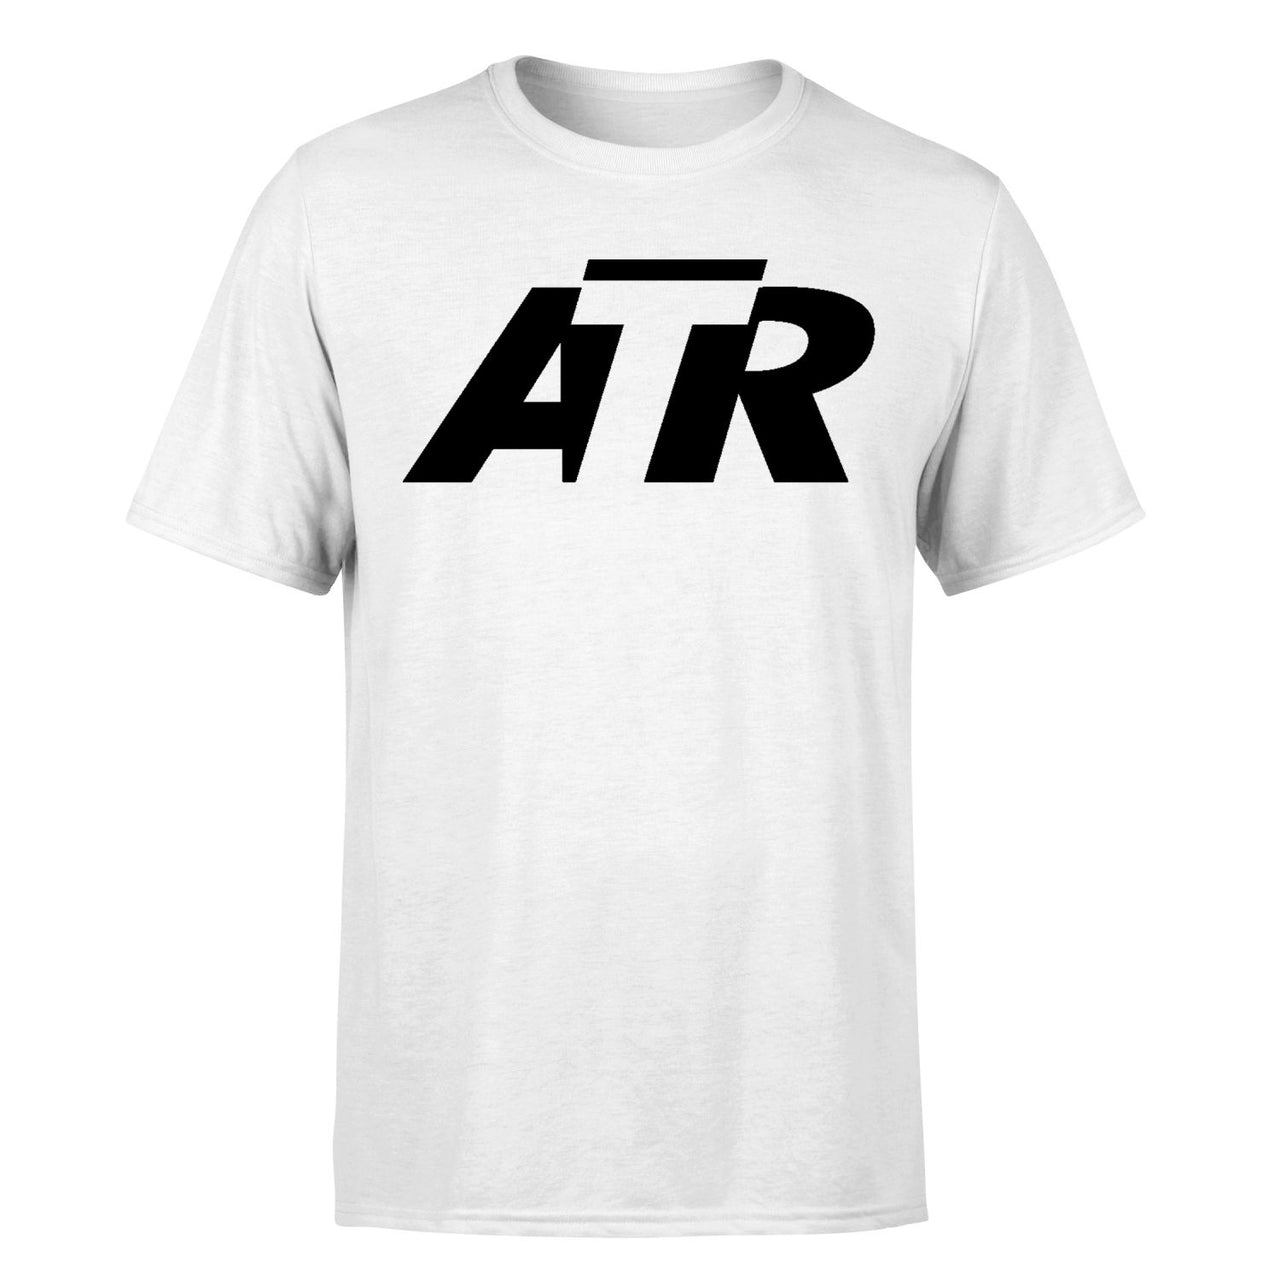 ATR & Text Designed T-Shirts